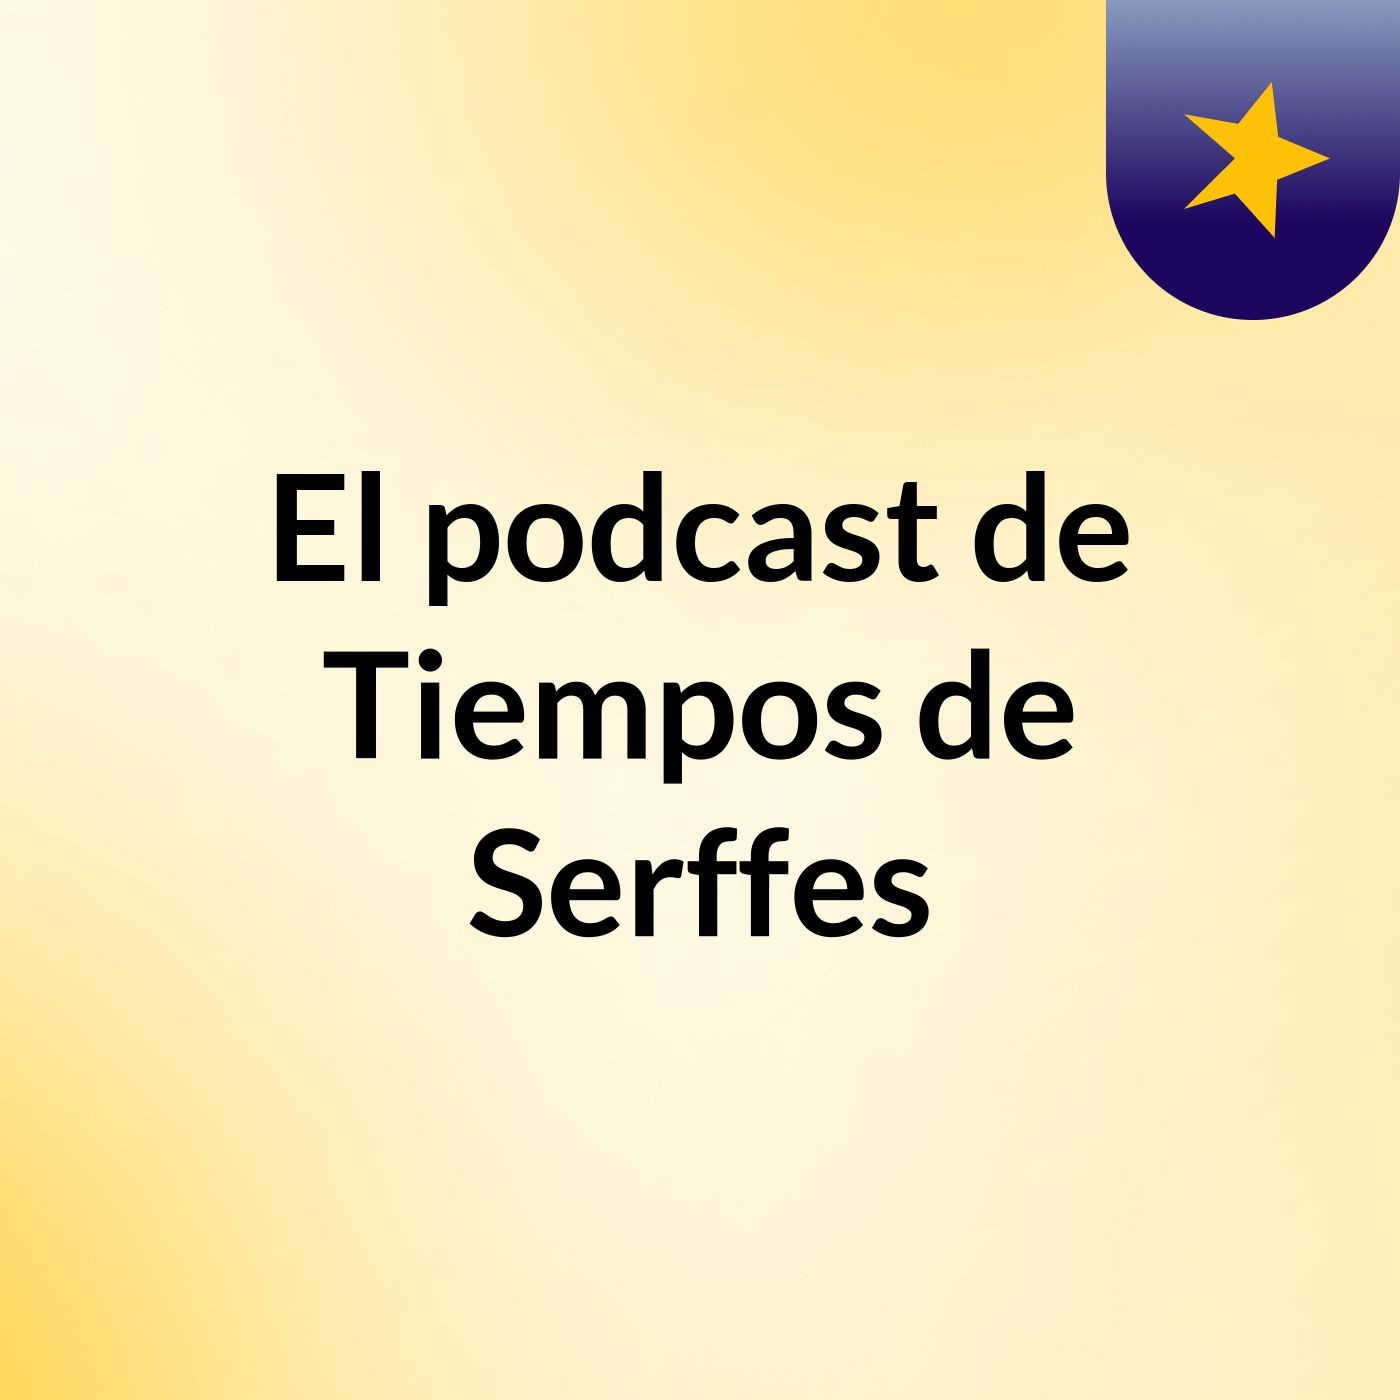 Episodio 15 - El podcast de Tiempos de Serffes